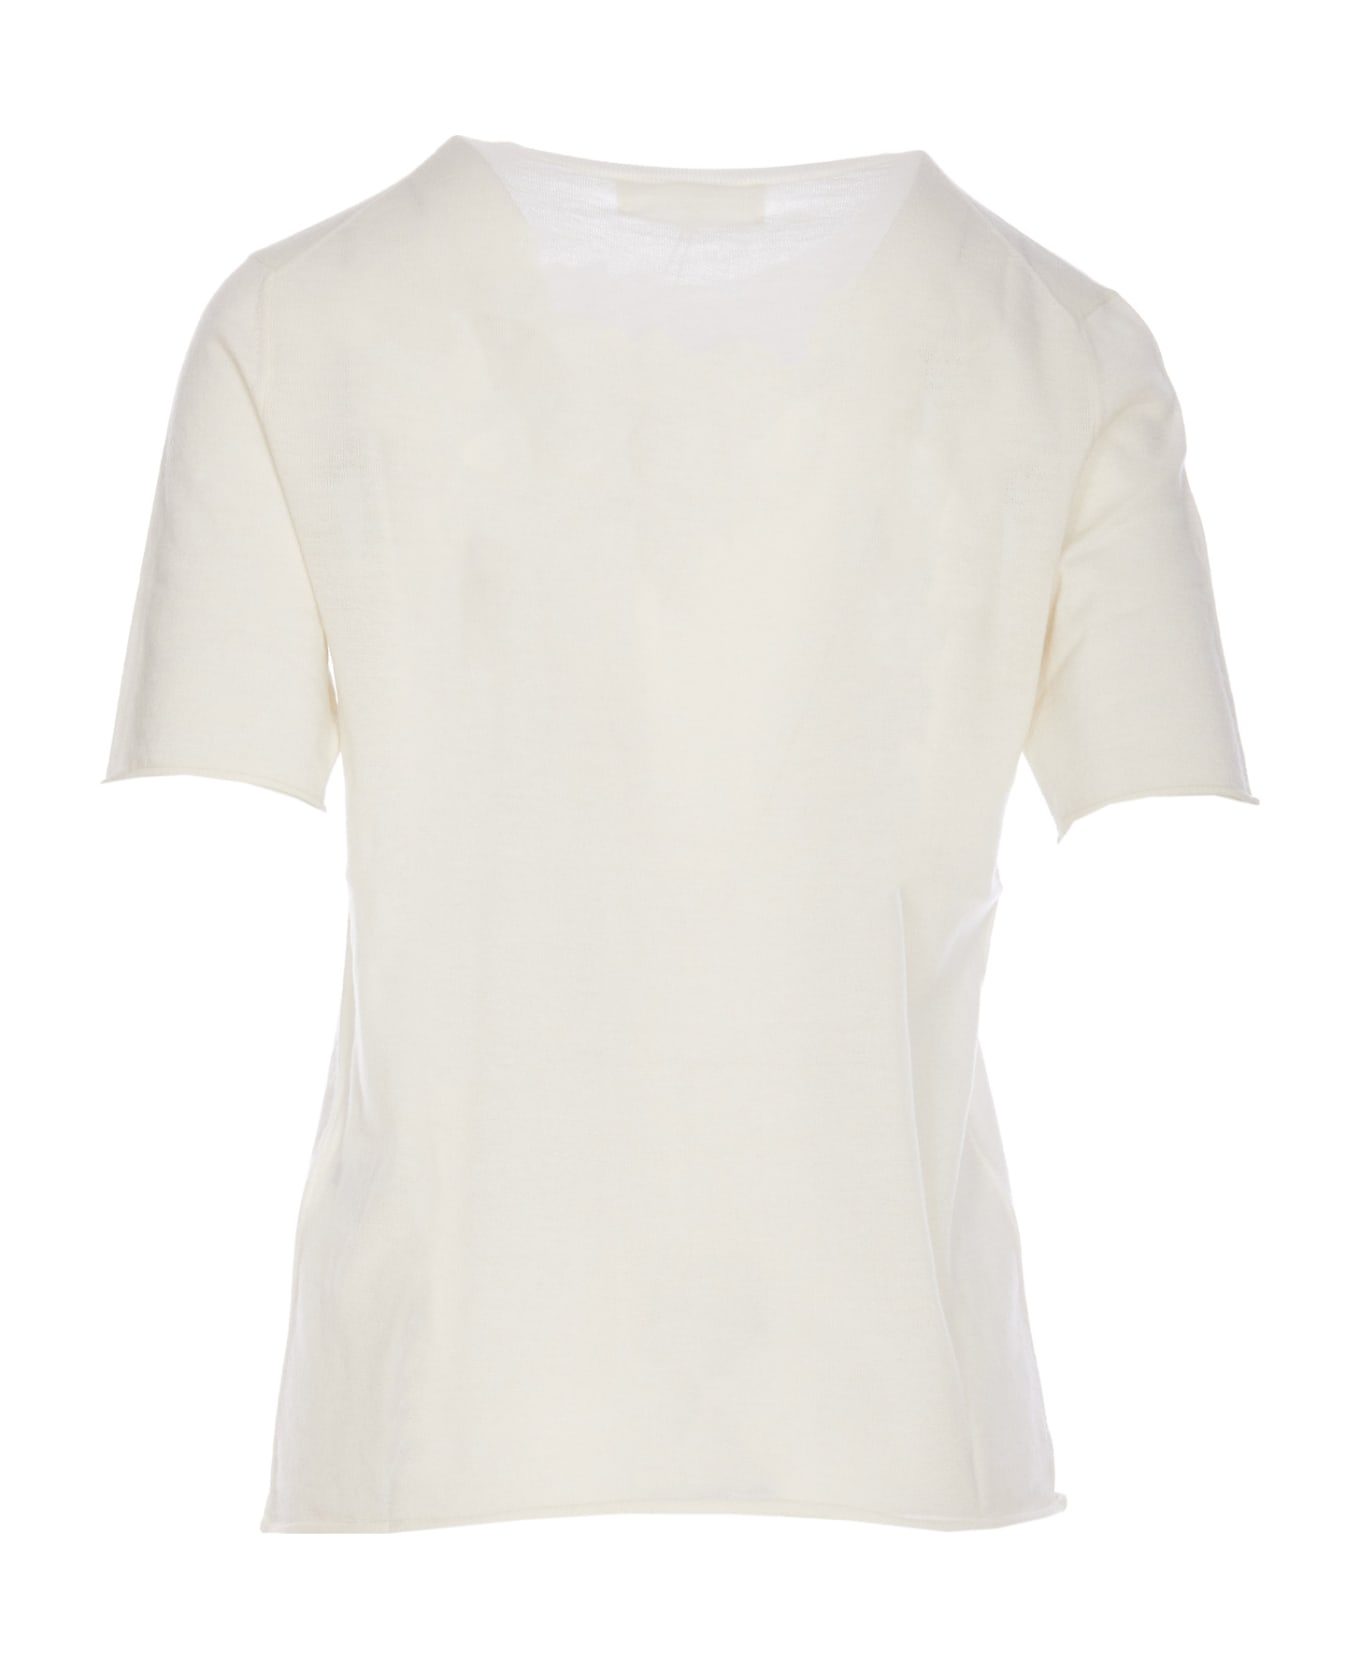 Lisa Yang Ari T-shirt - White